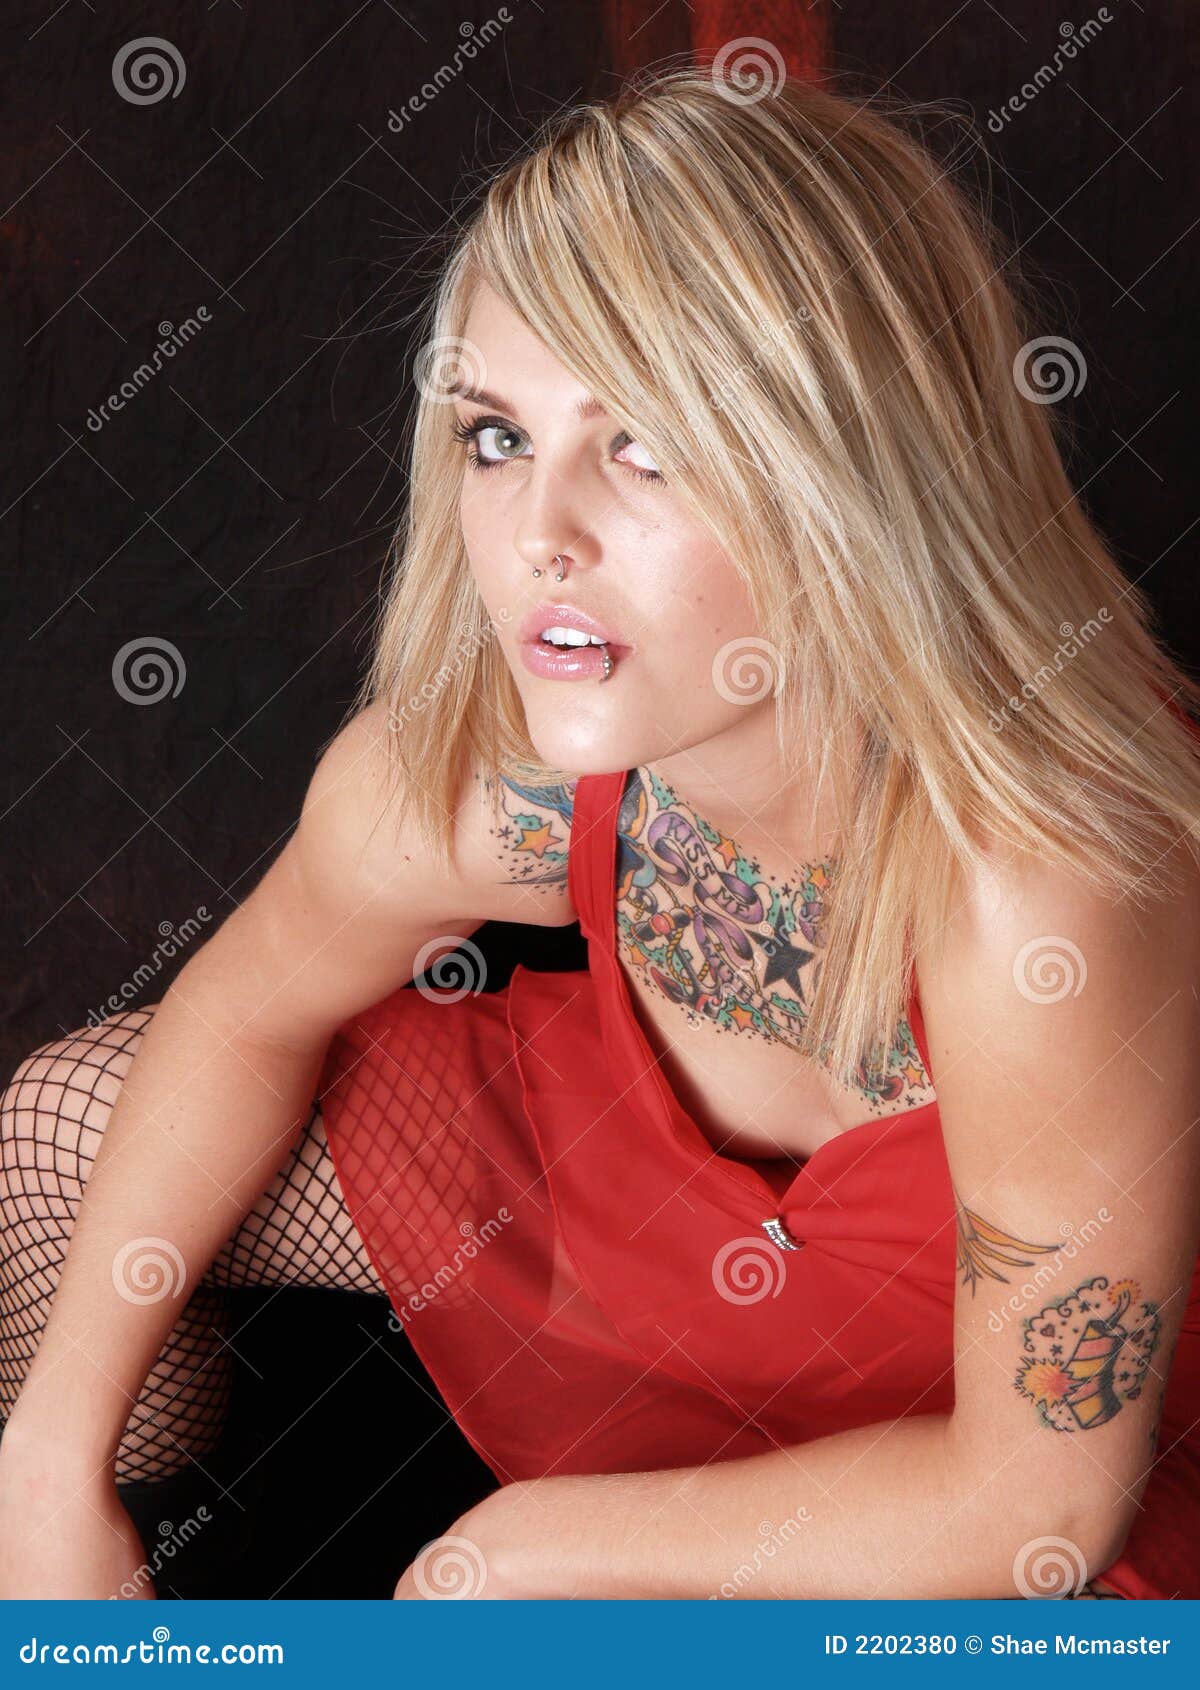 Sassy tattooed blonde